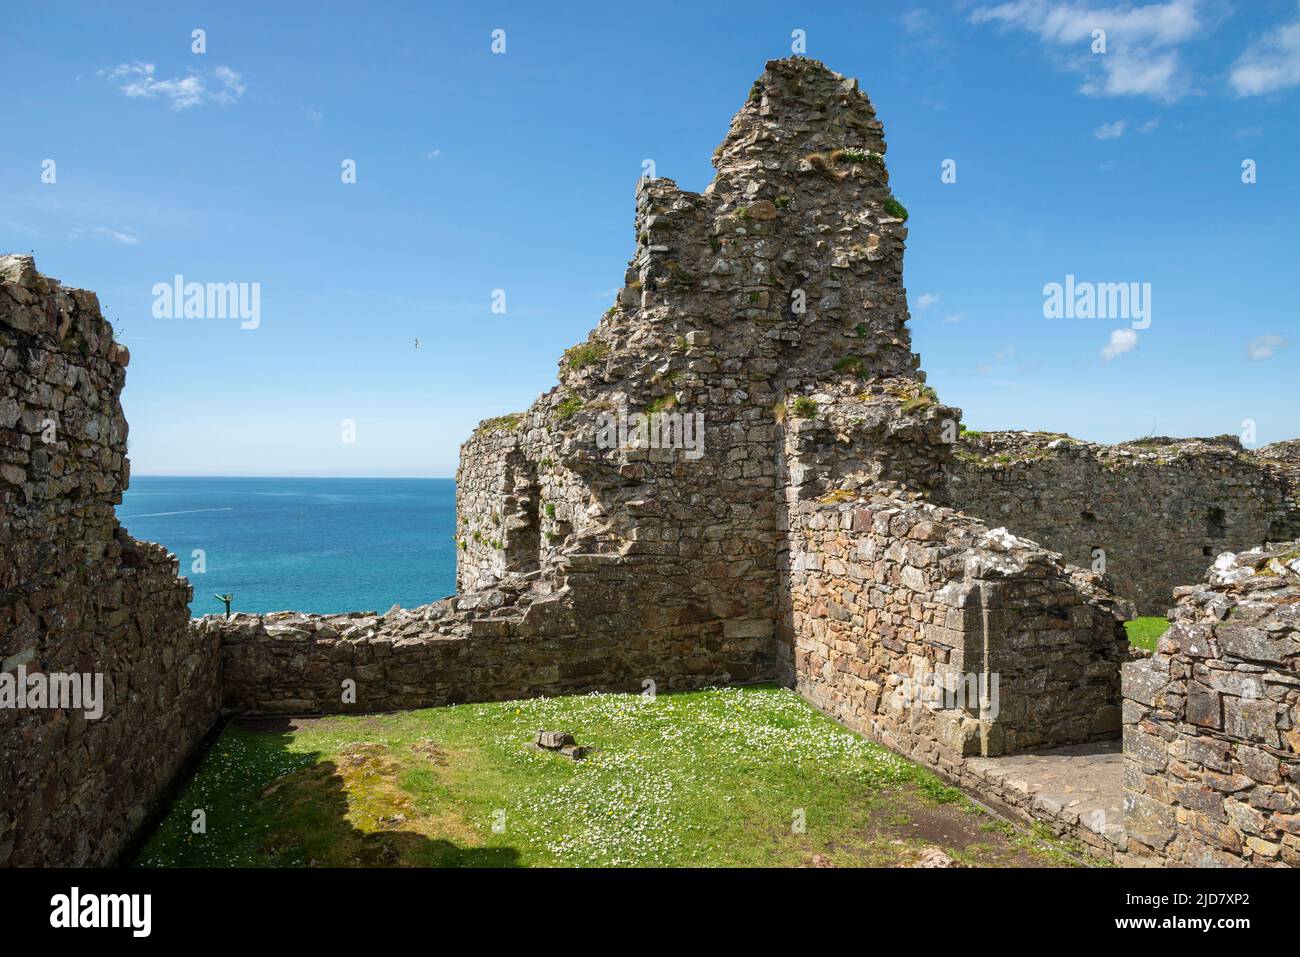 Les ruines du château de Criccieth, au-dessus de la ville de Criccieth, surplombant la baie de Tremadog, la péninsule de Lleyn, au nord du pays de Galles. Banque D'Images